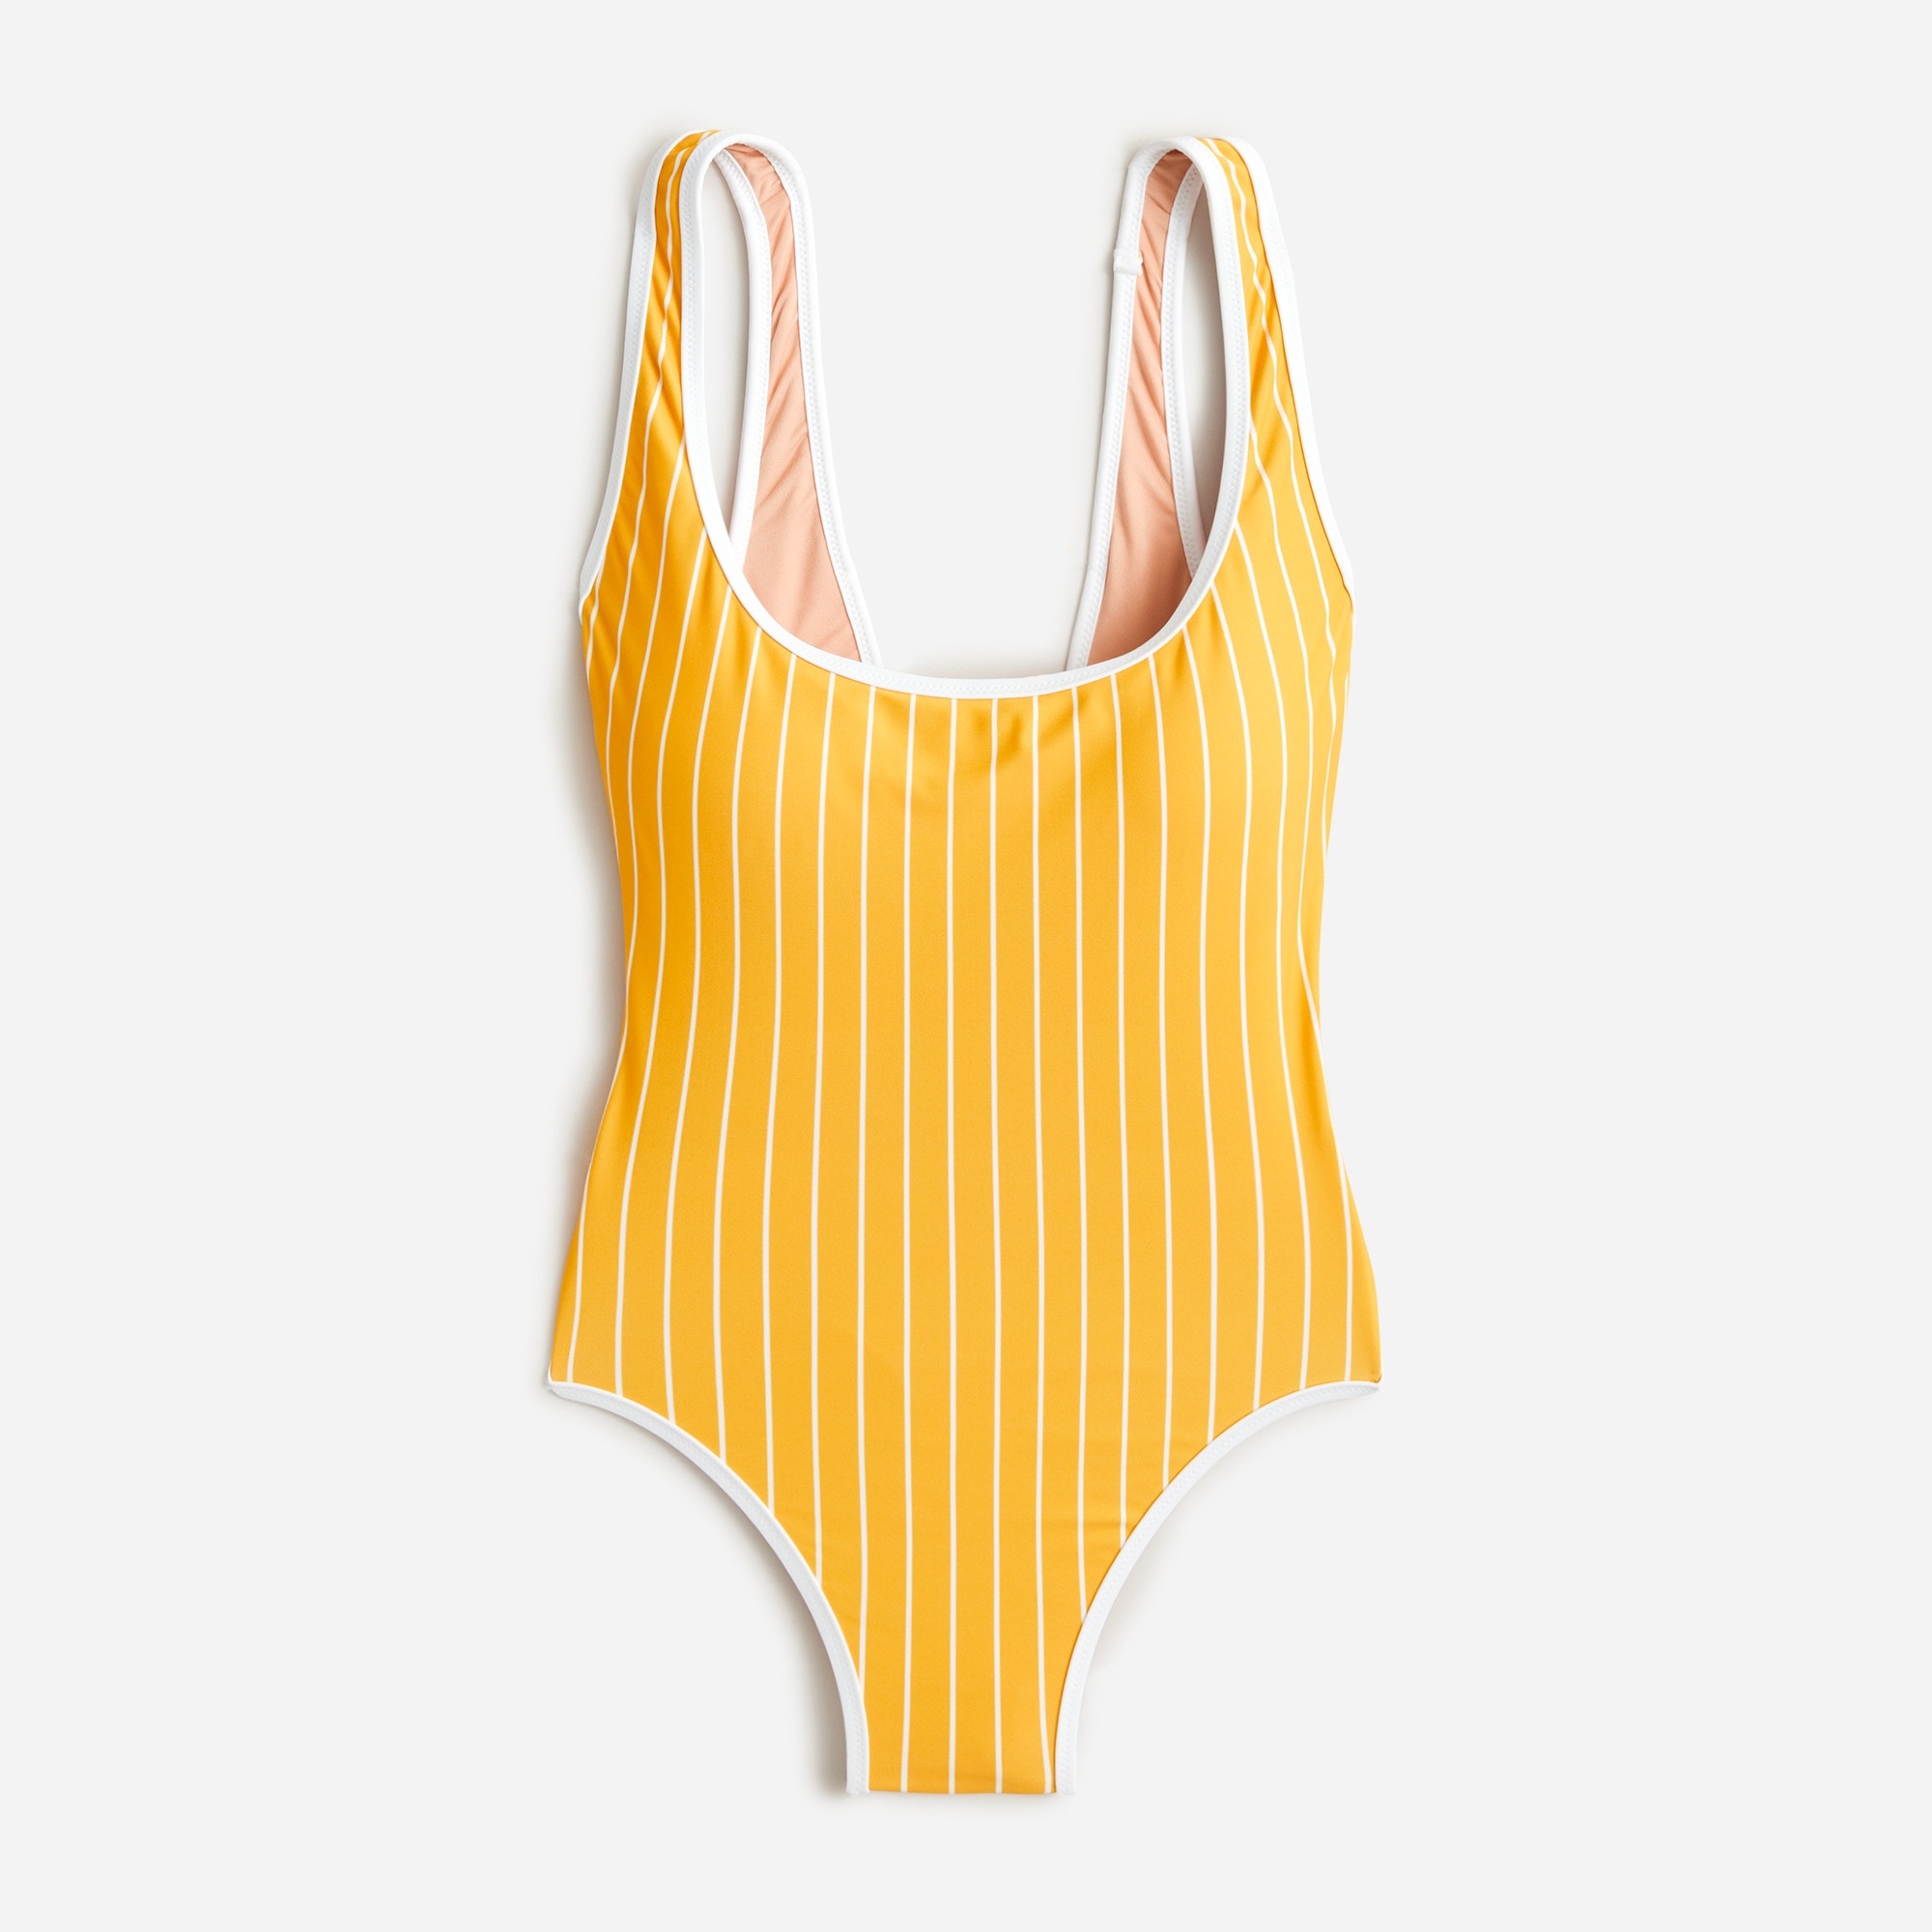  Scoopneck one-piece swimsuit in stripe